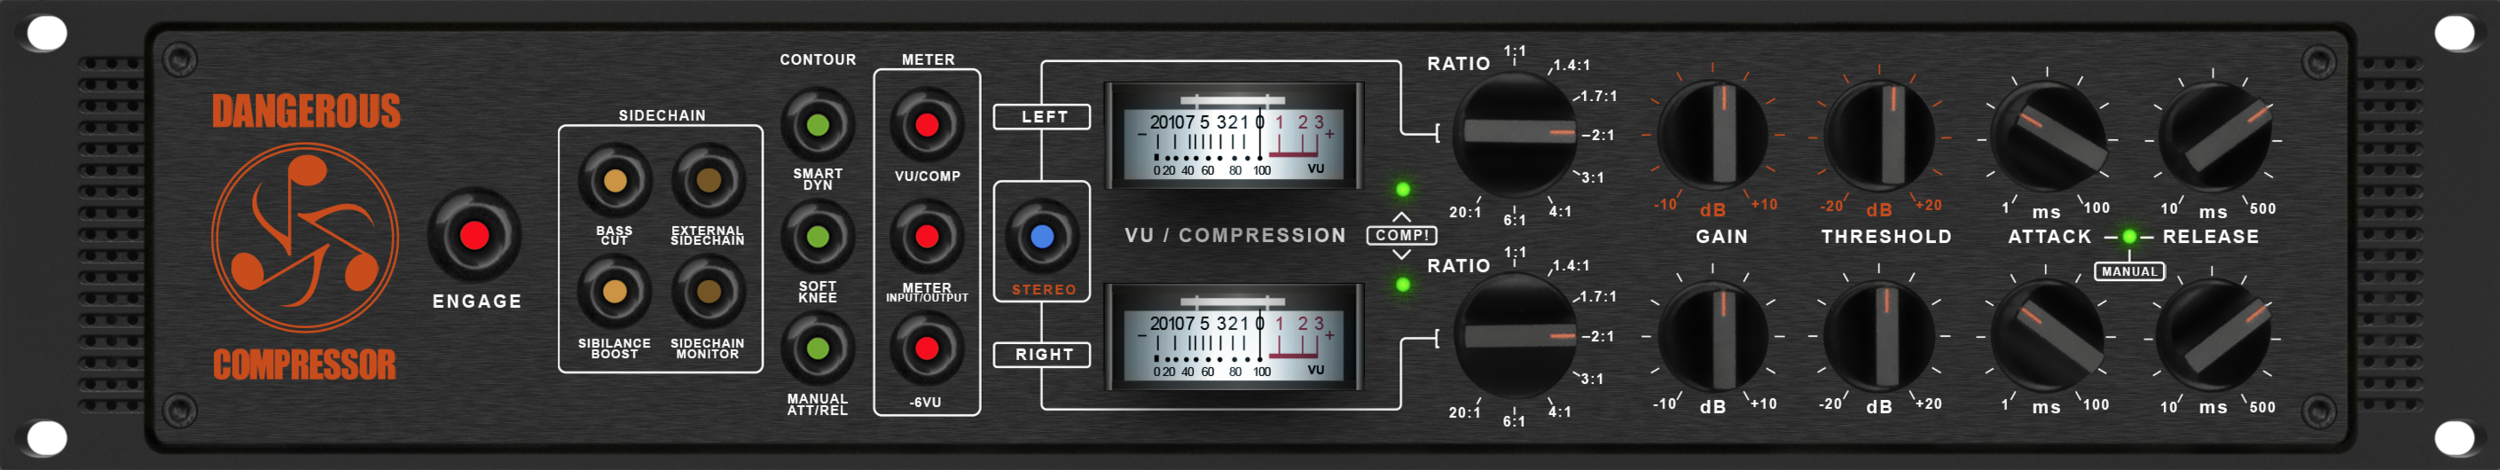 Compressor v1